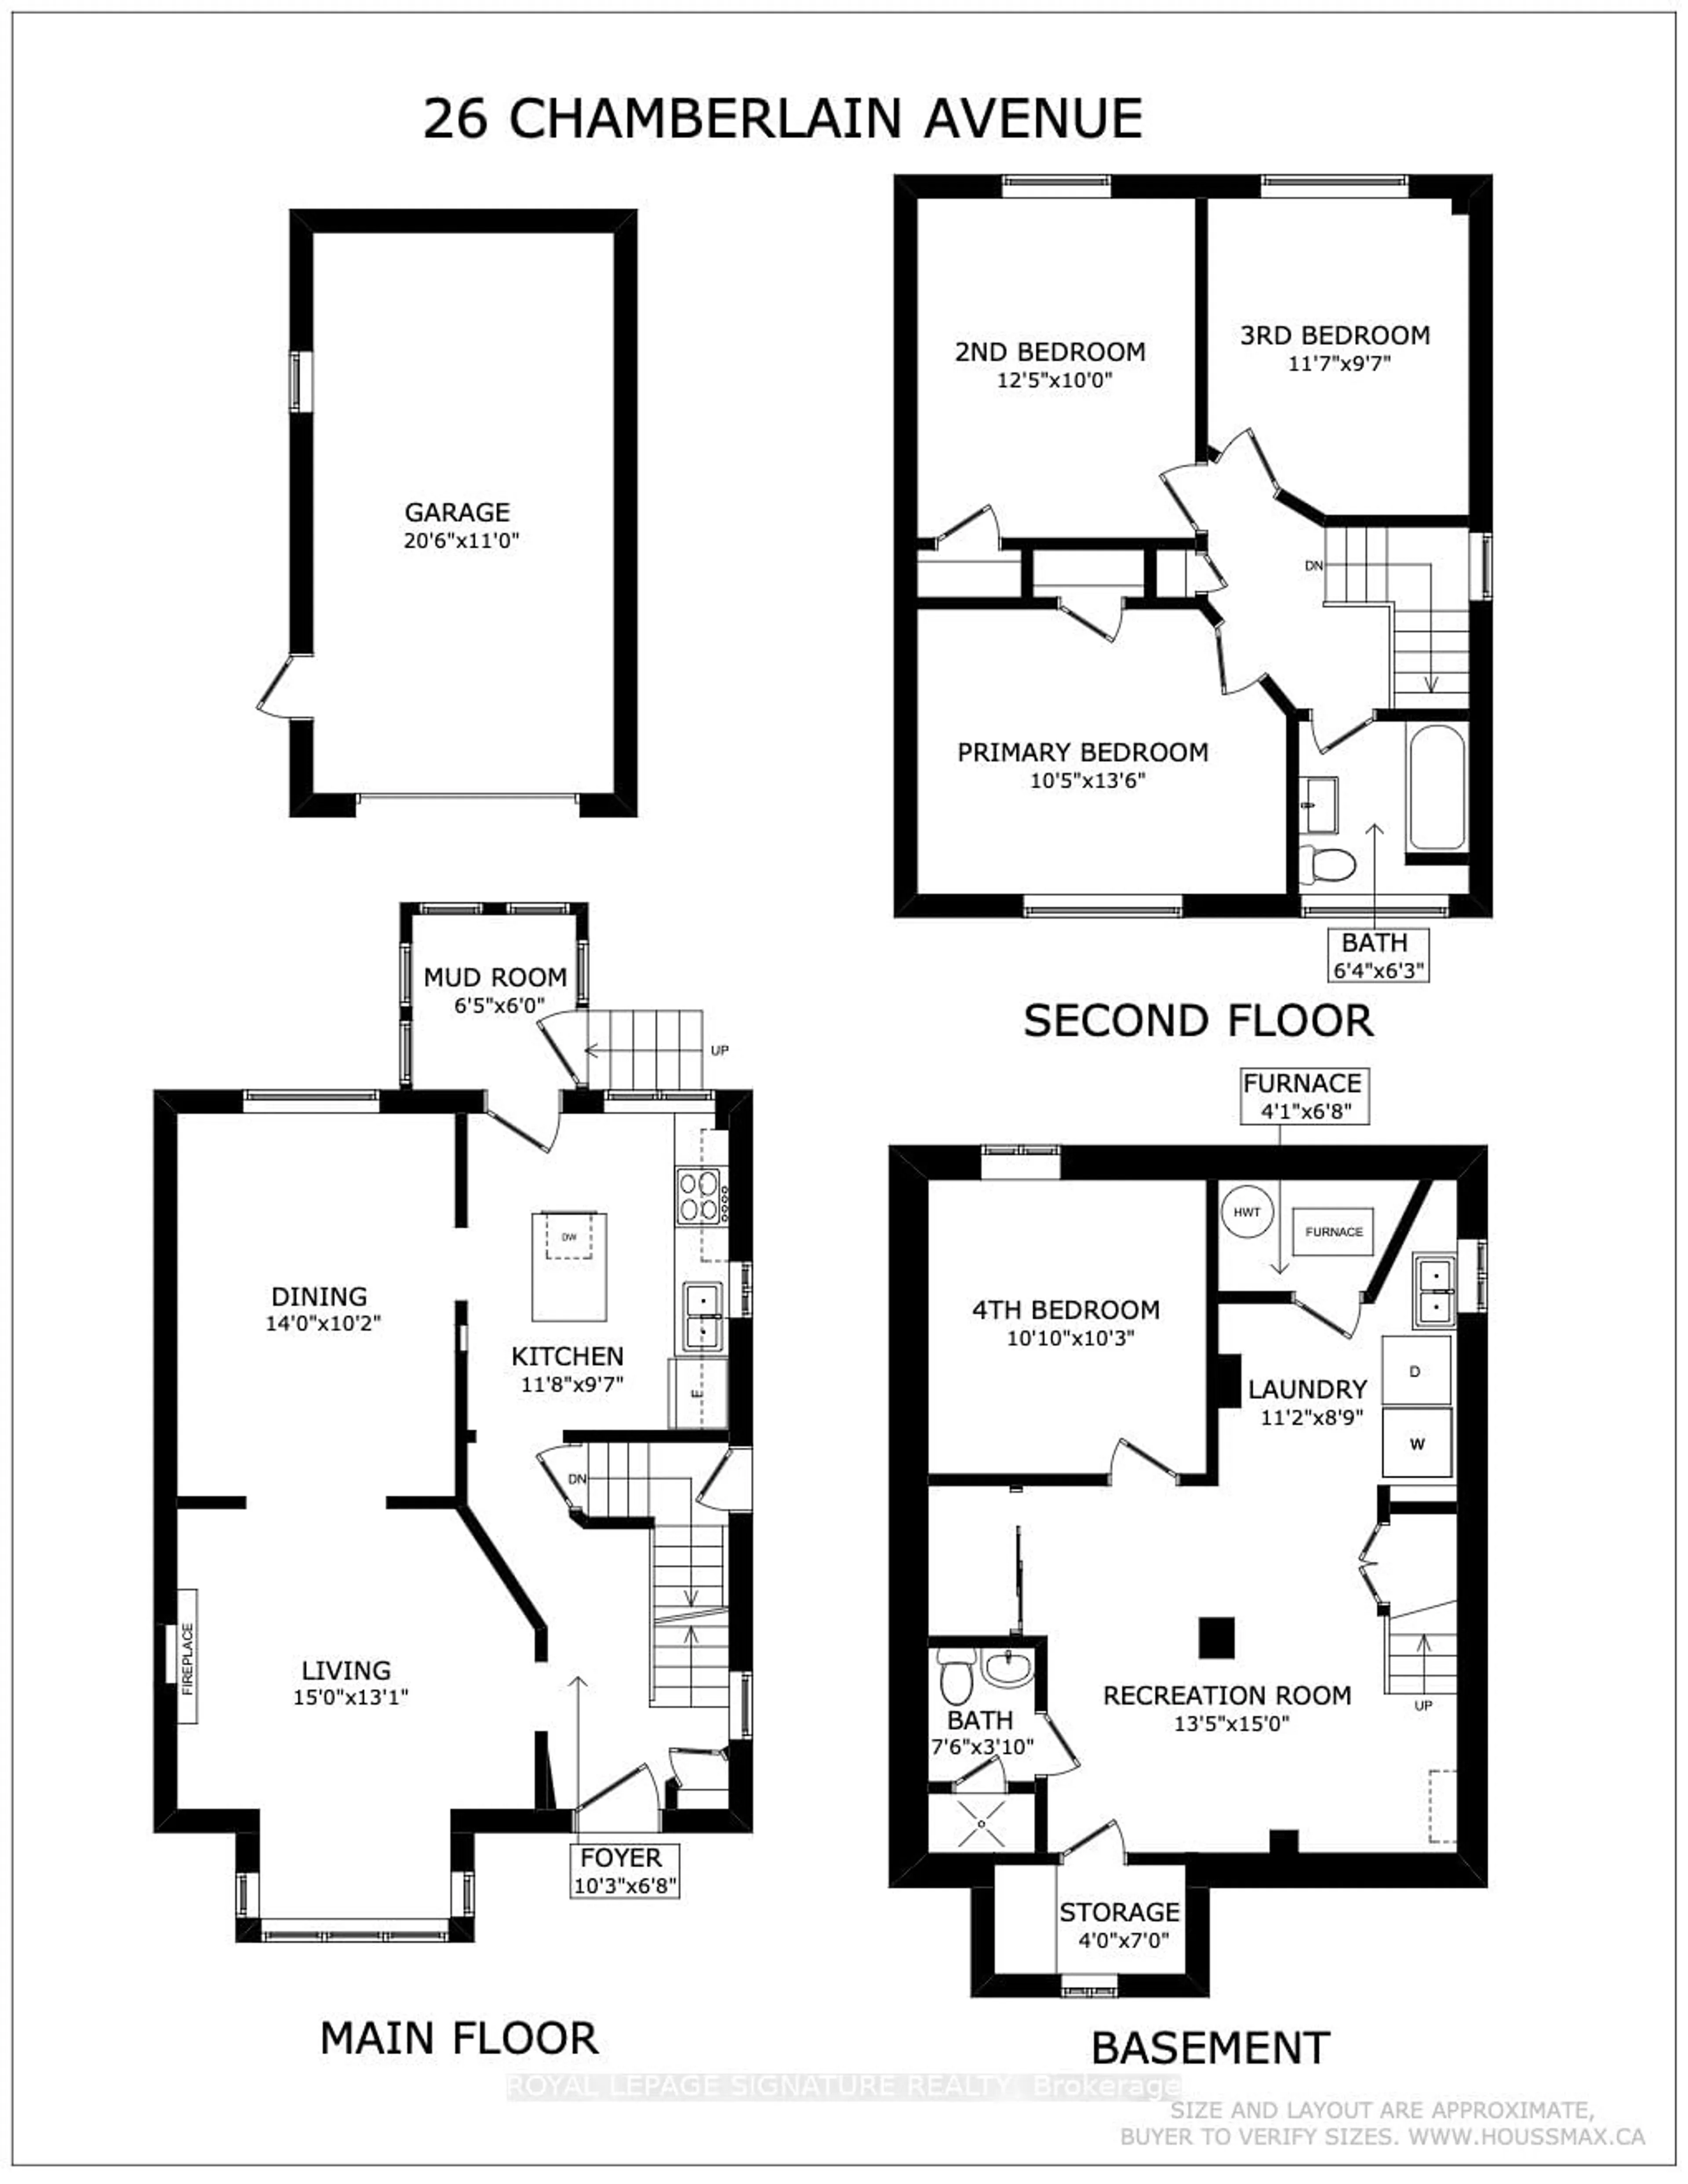 Floor plan for 26 Chamberlain Ave, Toronto Ontario M6E 4J8